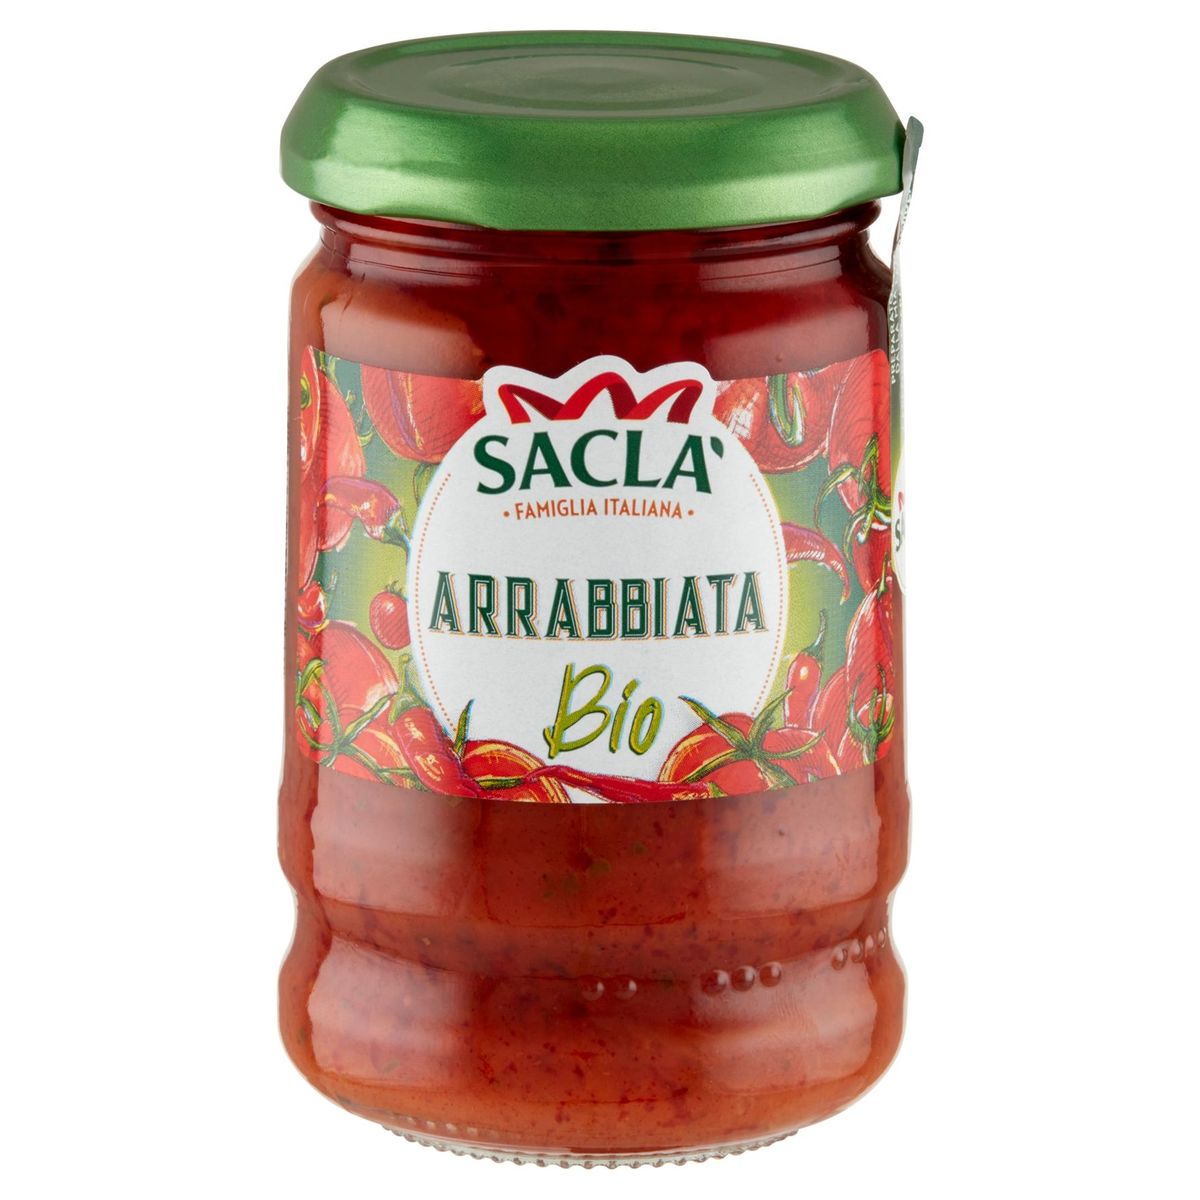 Sacla Arrabbiata Bio 190 g